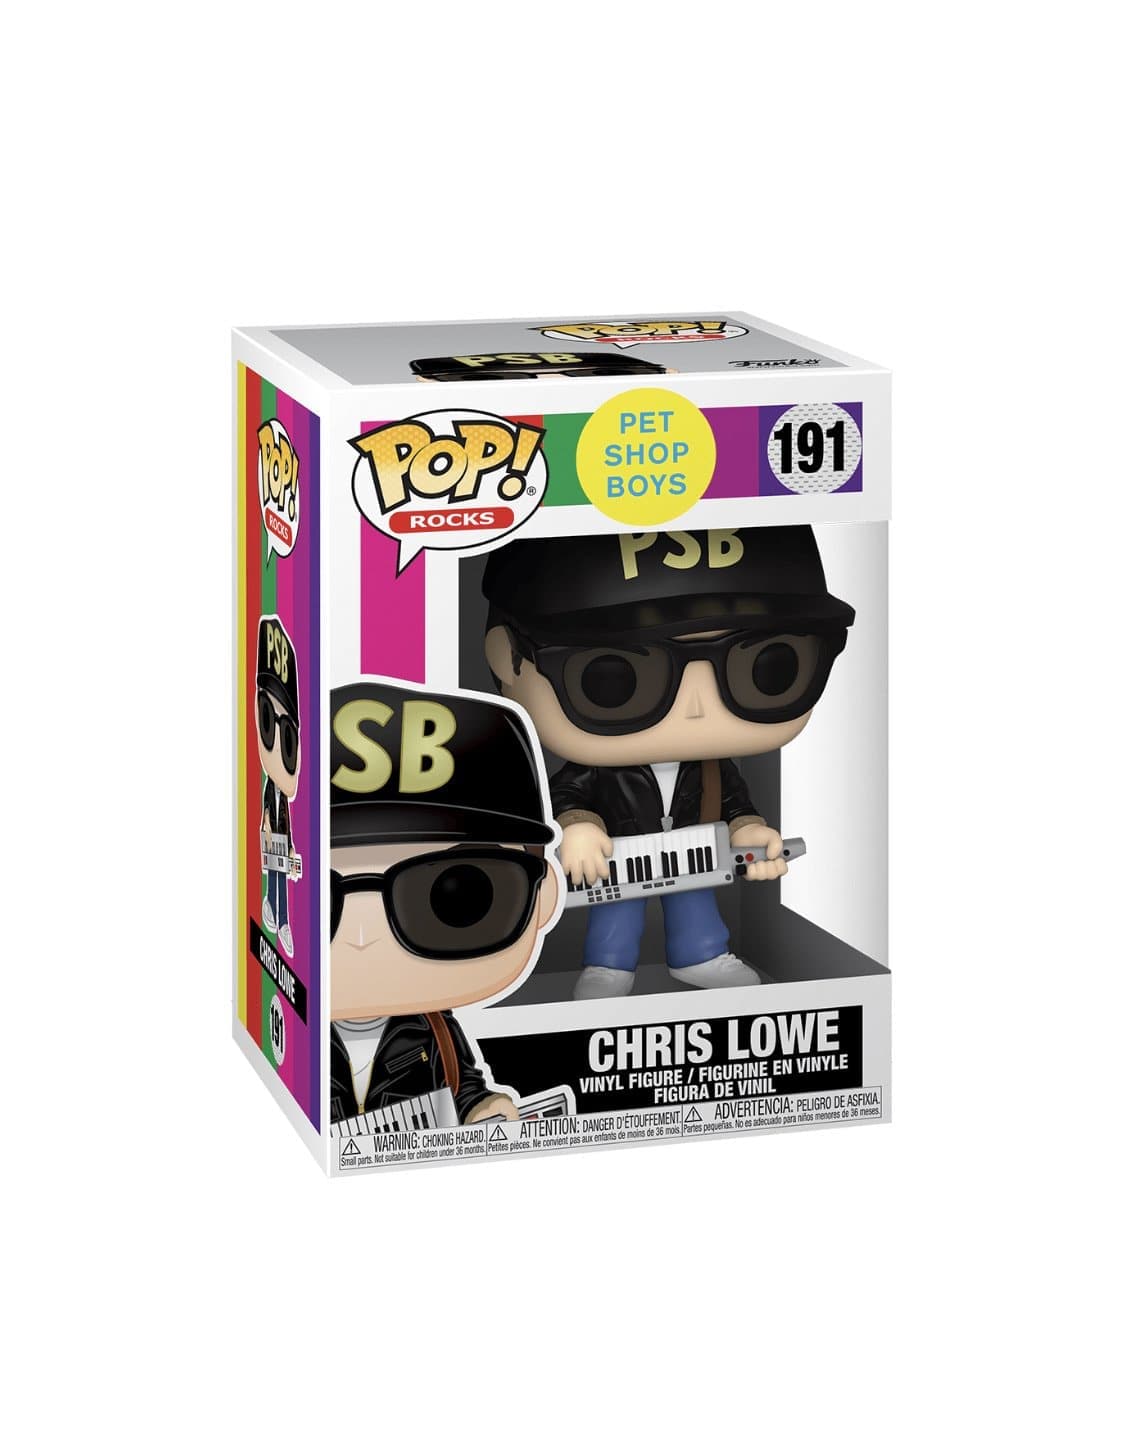 Pet Shop Boys - Chris Lowe - Pre Order - Pop Figures